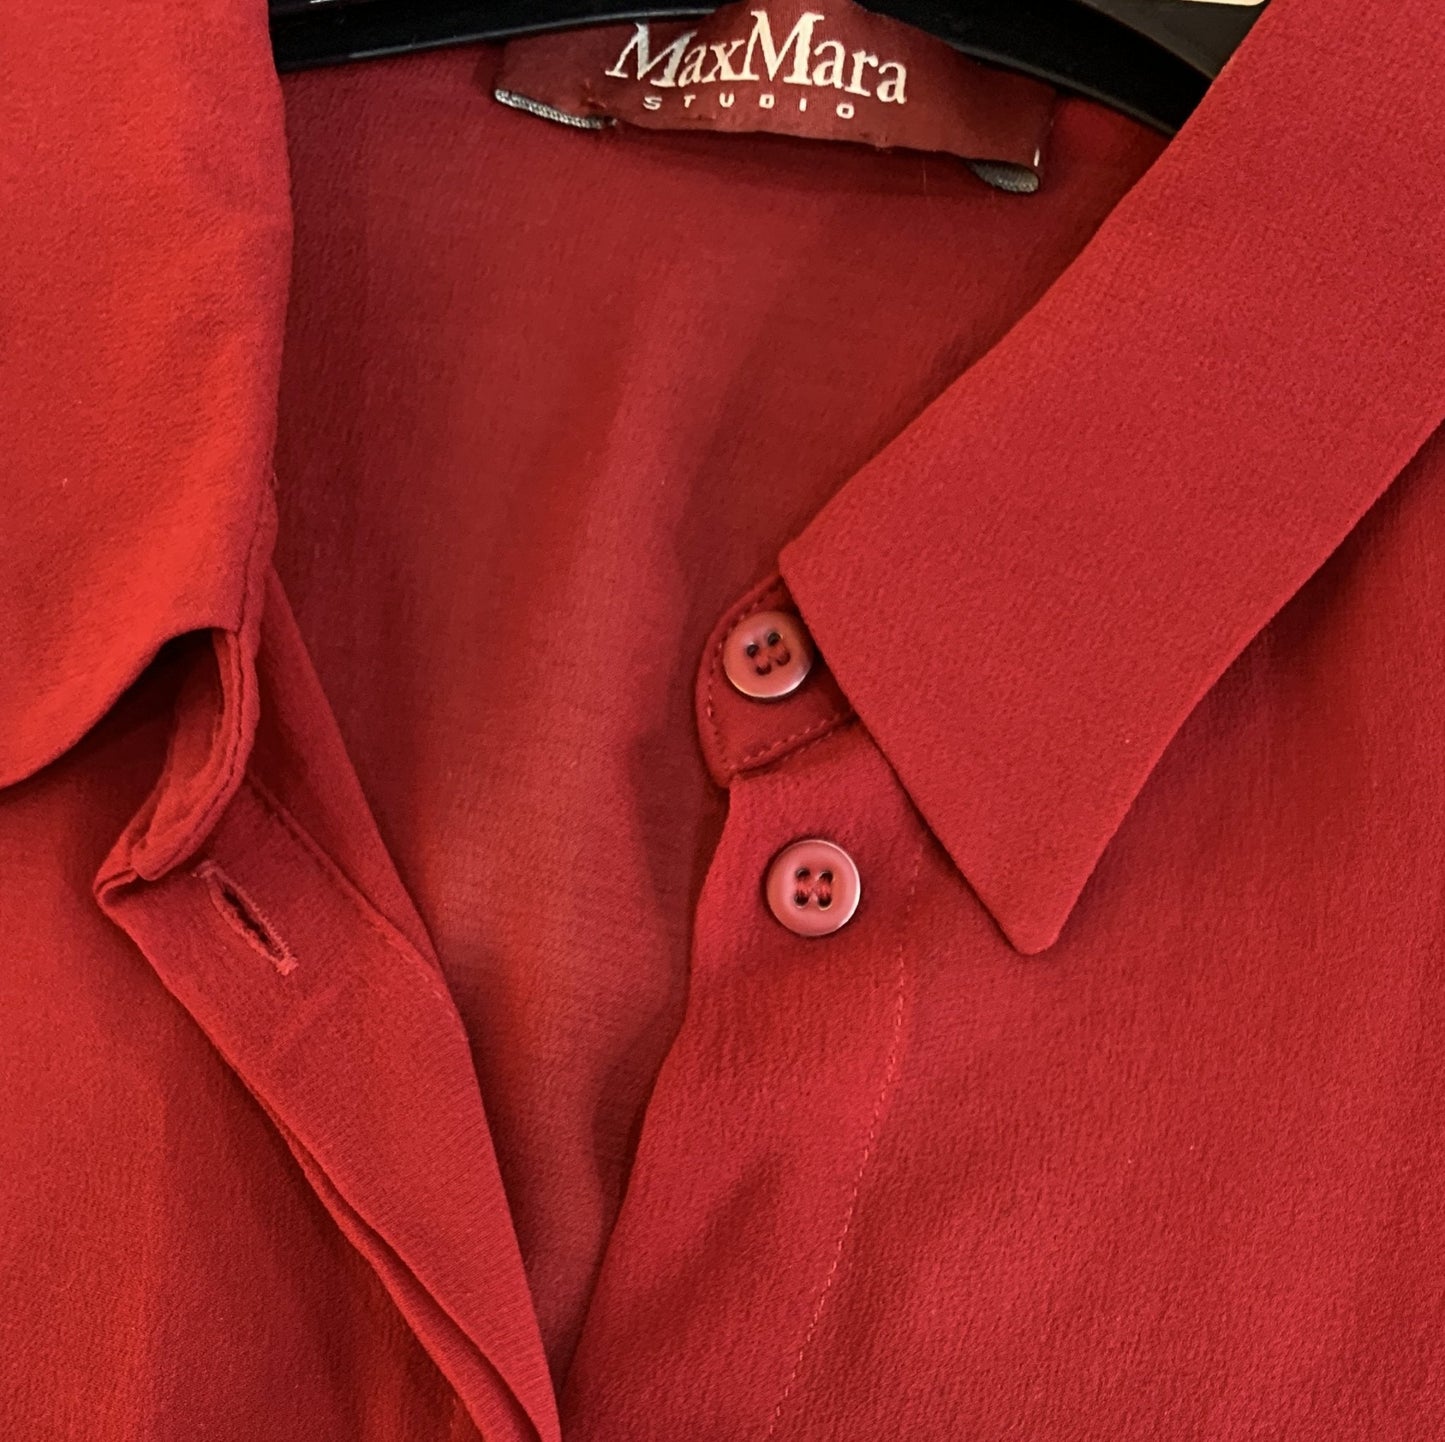 Max Mara camicia in seta rossa tg. 40 - AgeVintage